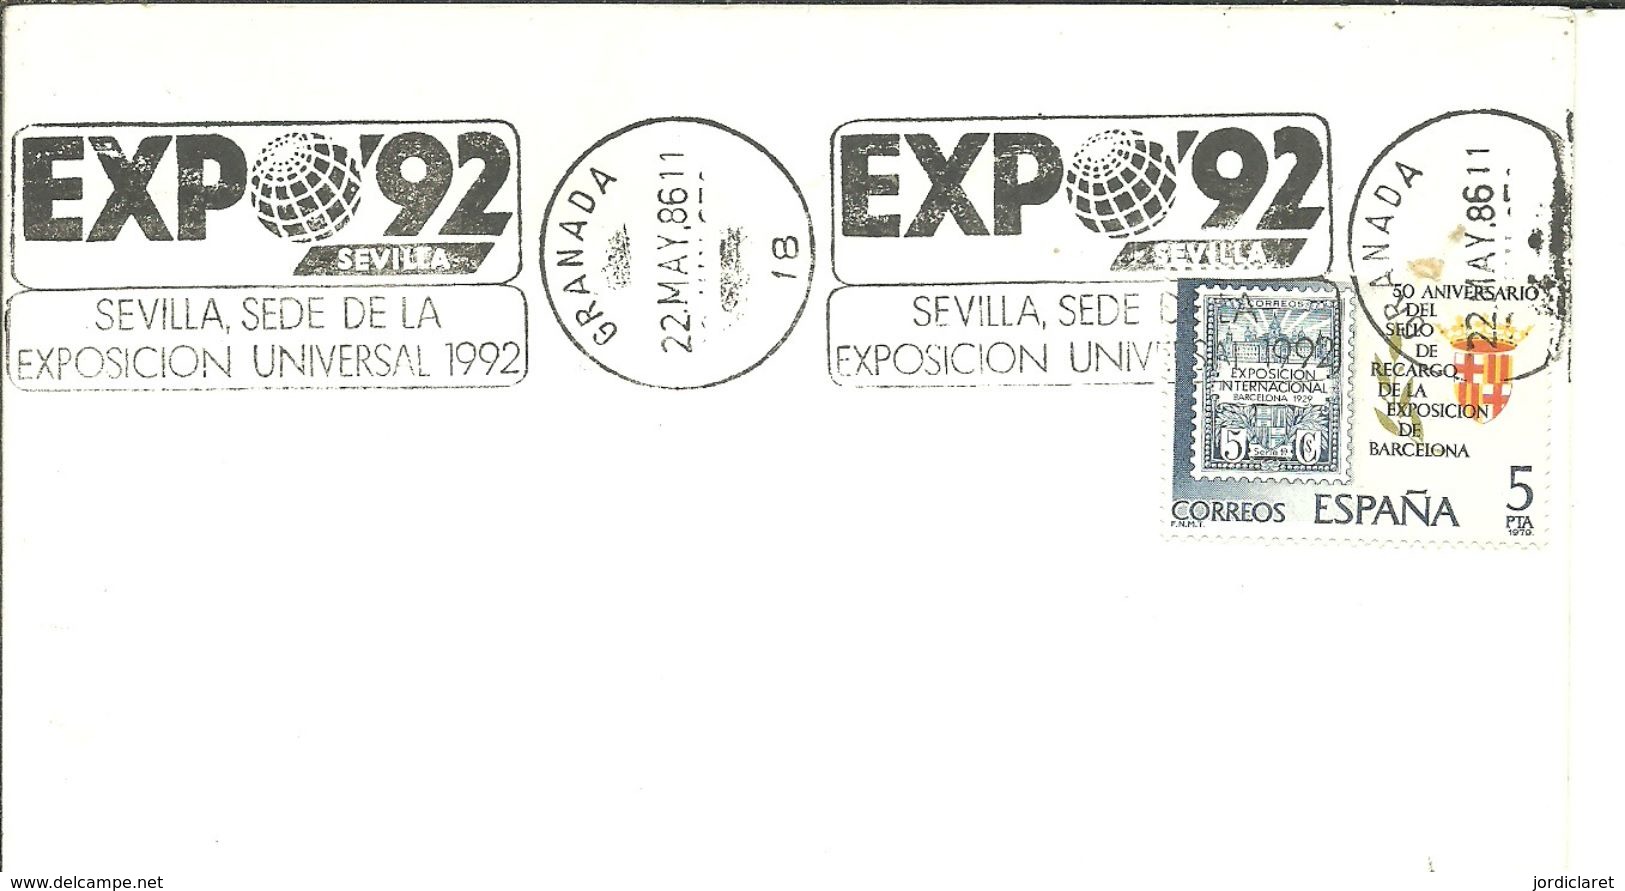 POSMARKET ESPAÑA HUELVA - 1992 – Siviglia (Spagna)